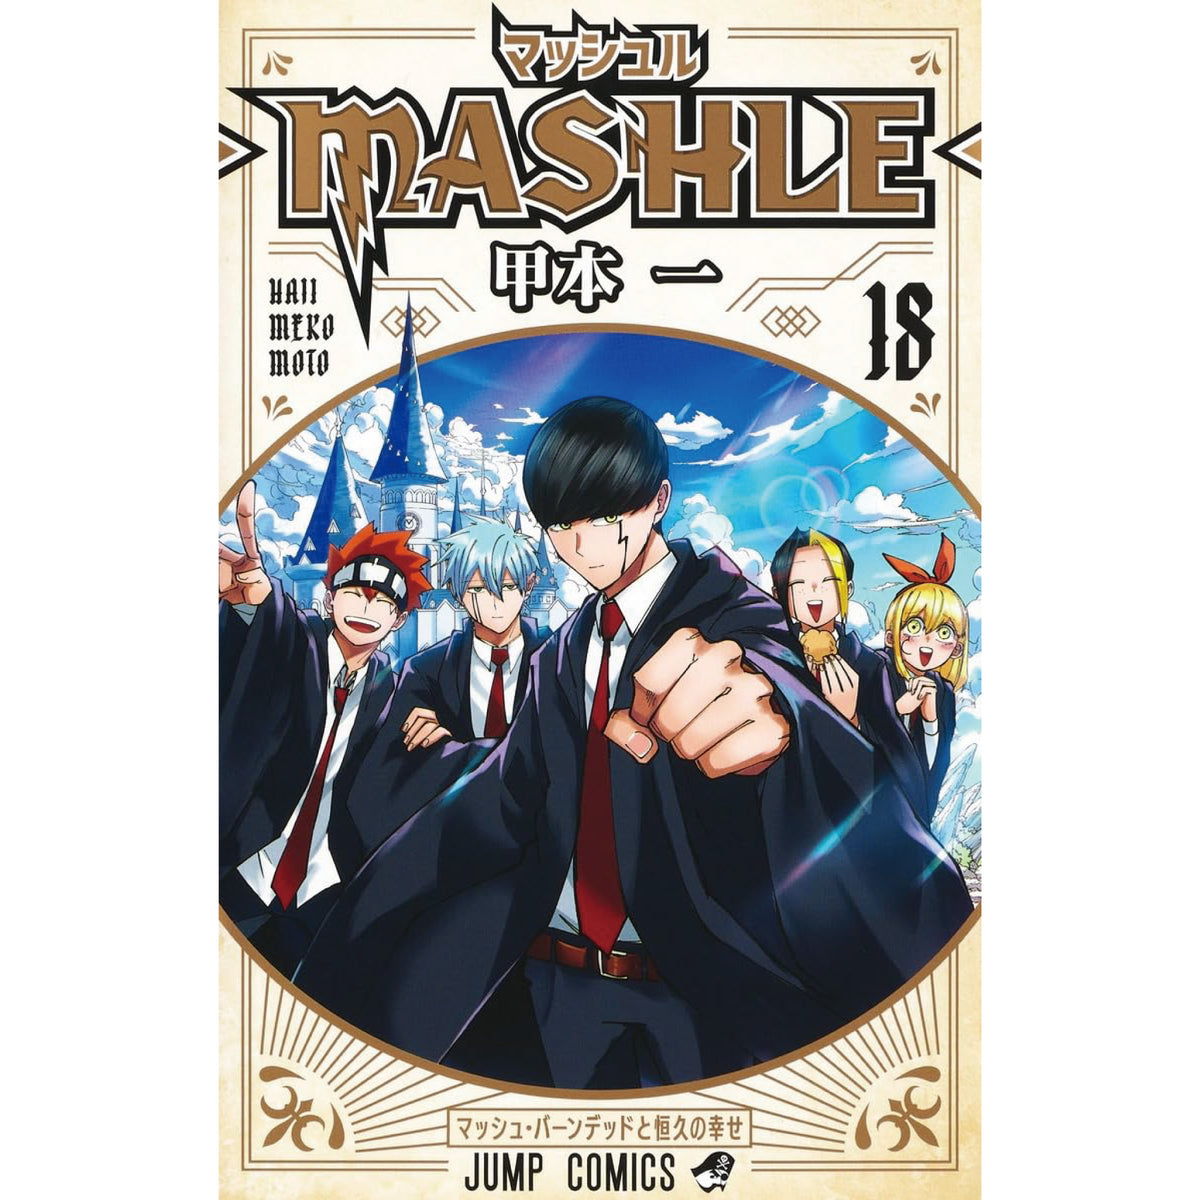 マッシュル MASHLE １〜１６巻 - 漫画